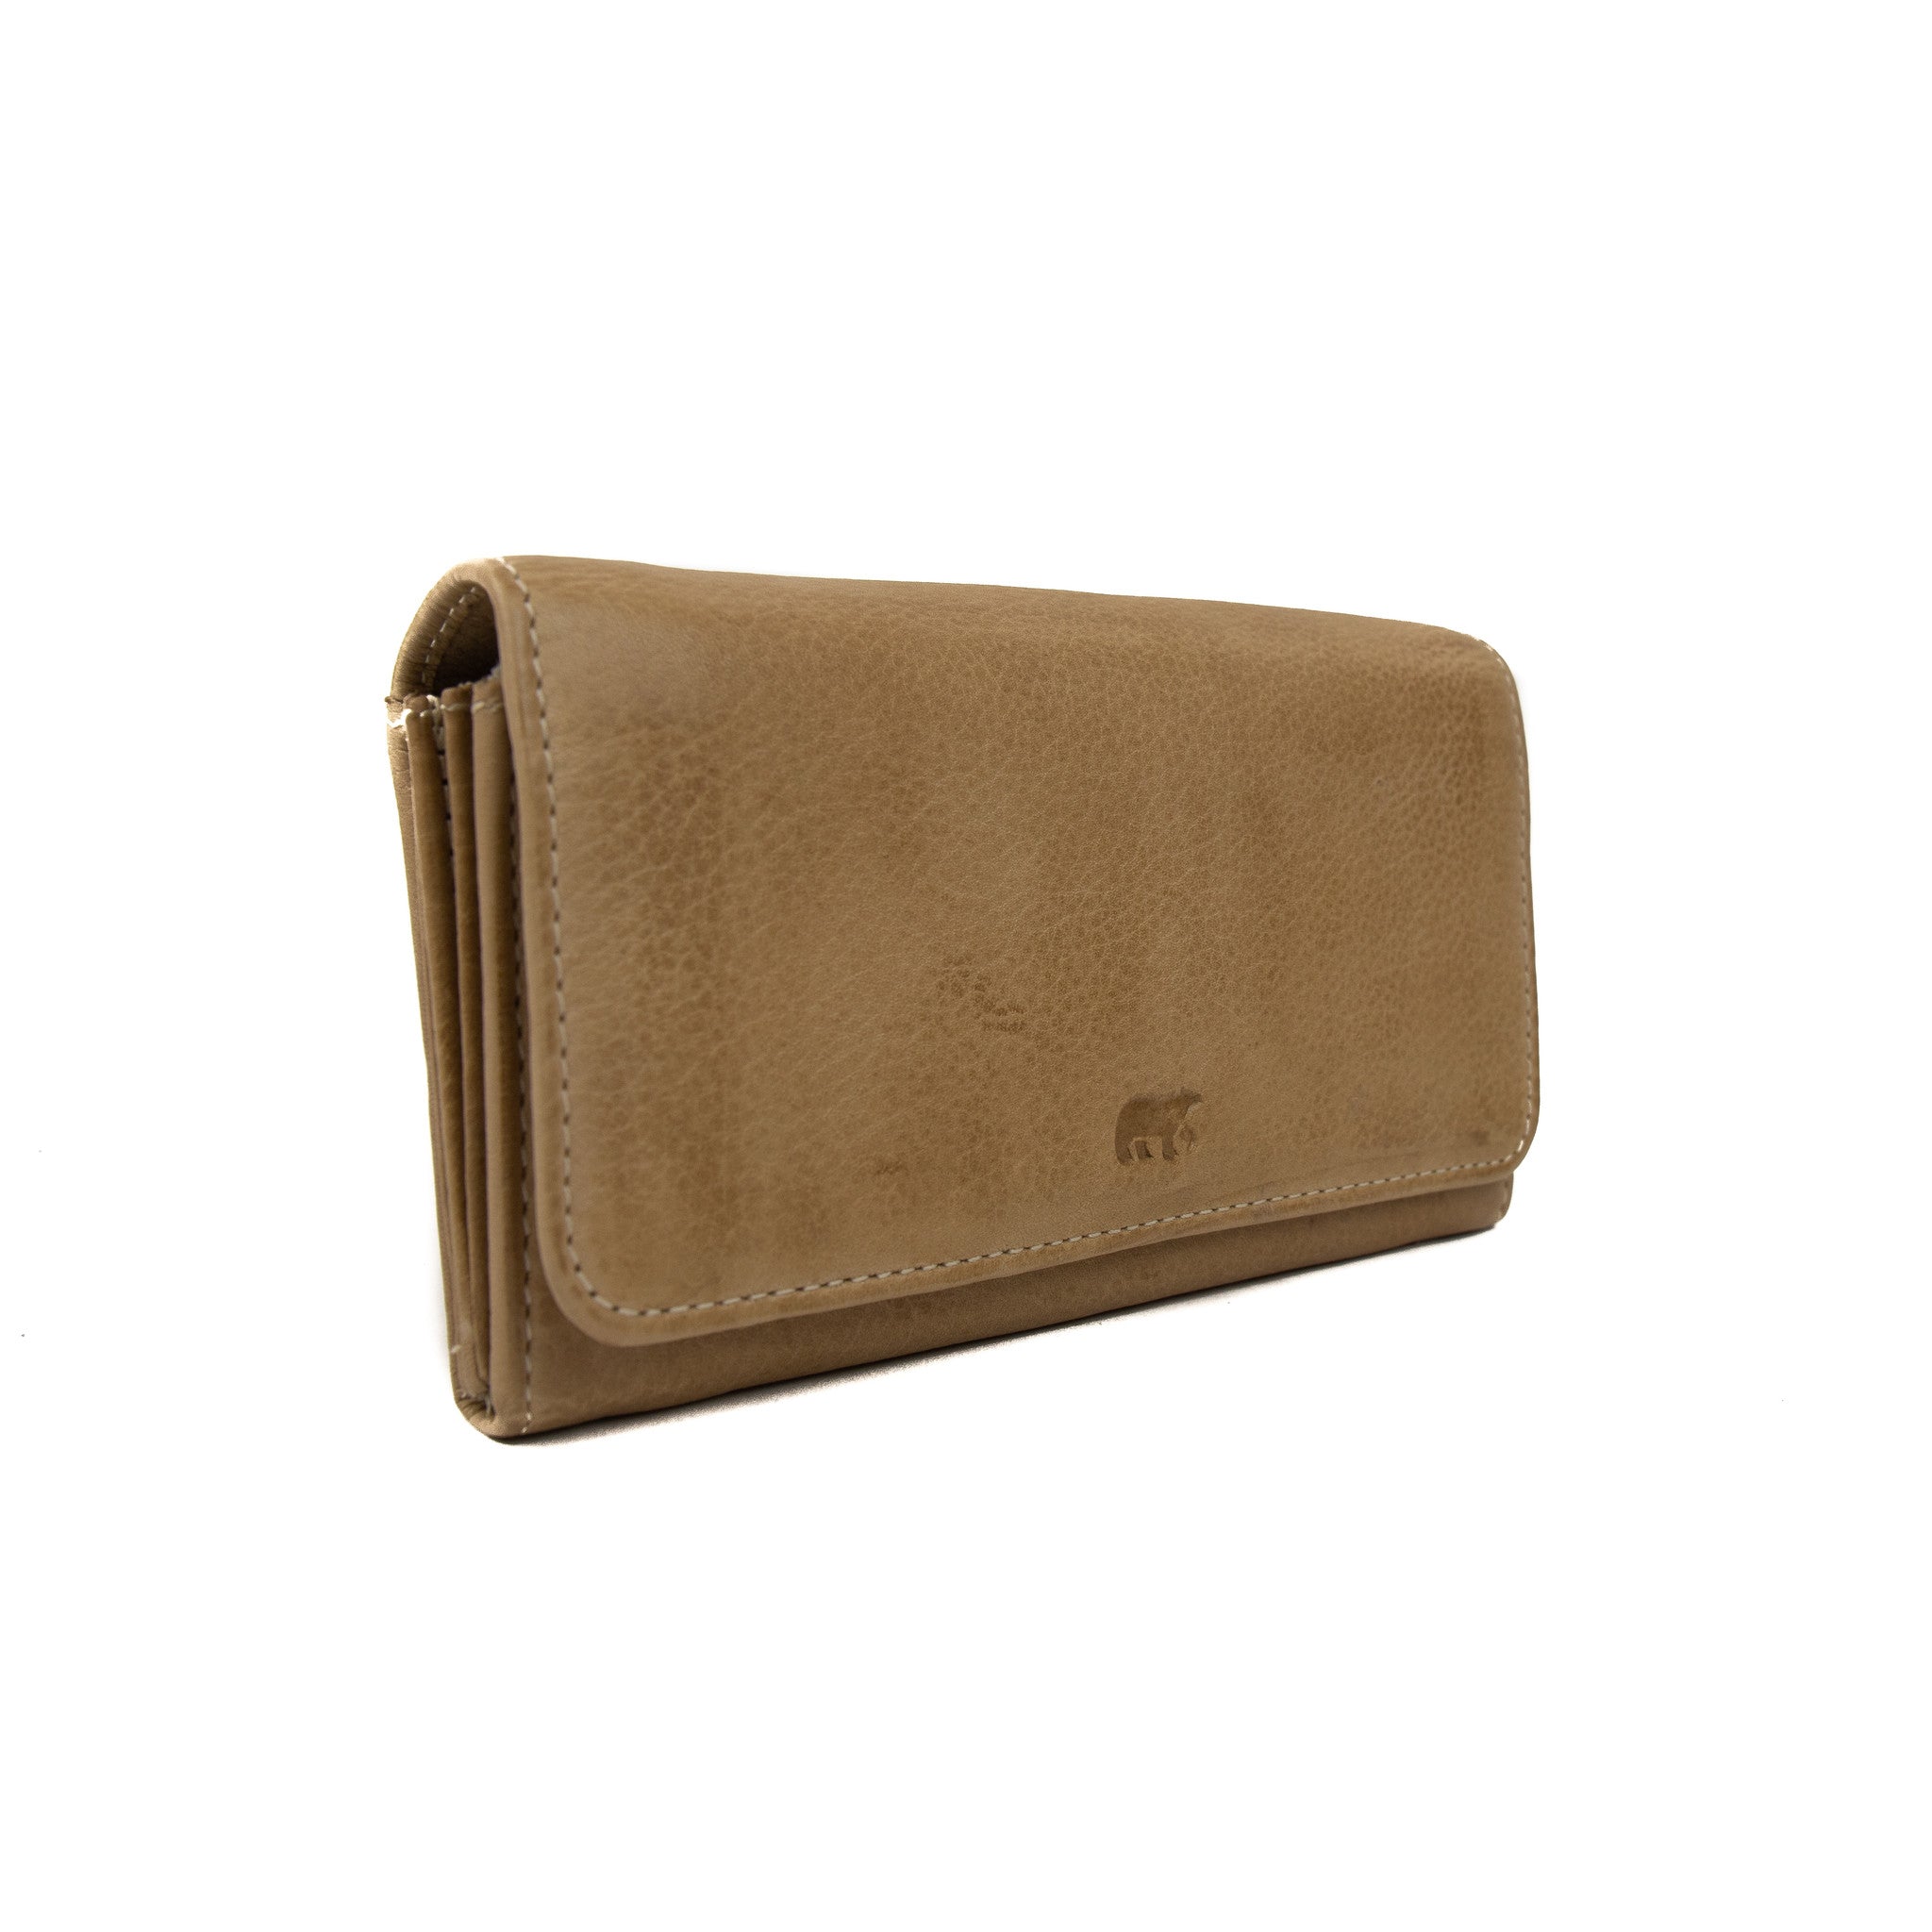 Wrap wallet 'Noor' beige - CL 9918